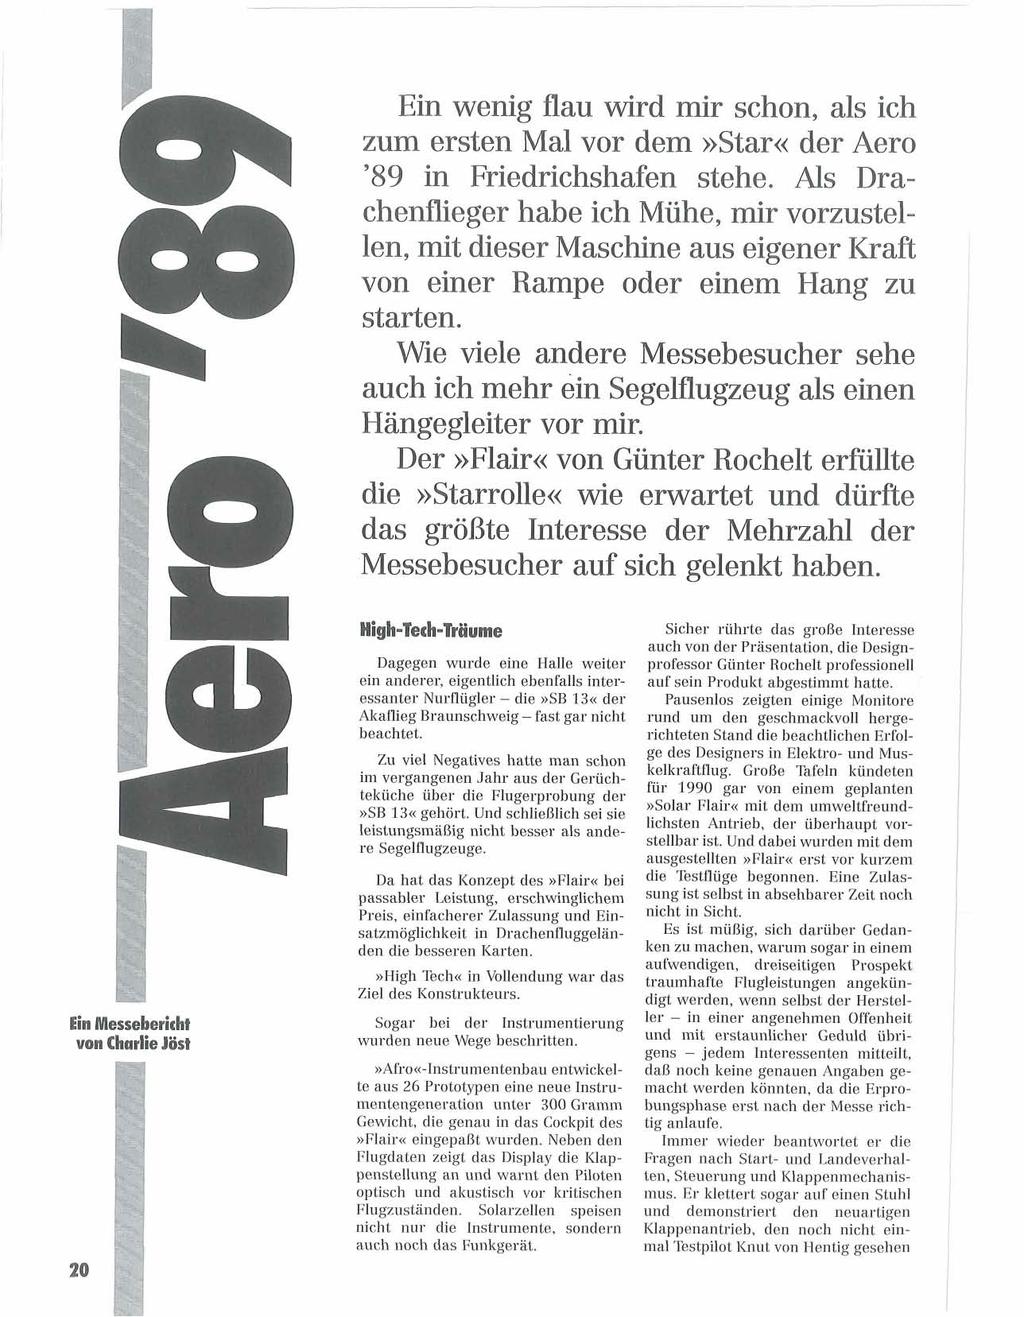 Ein wenig flau wird mir schon, als ich zum ersten Mal vor dem»star«der Aero '89 in Friedrichshafen stehe.